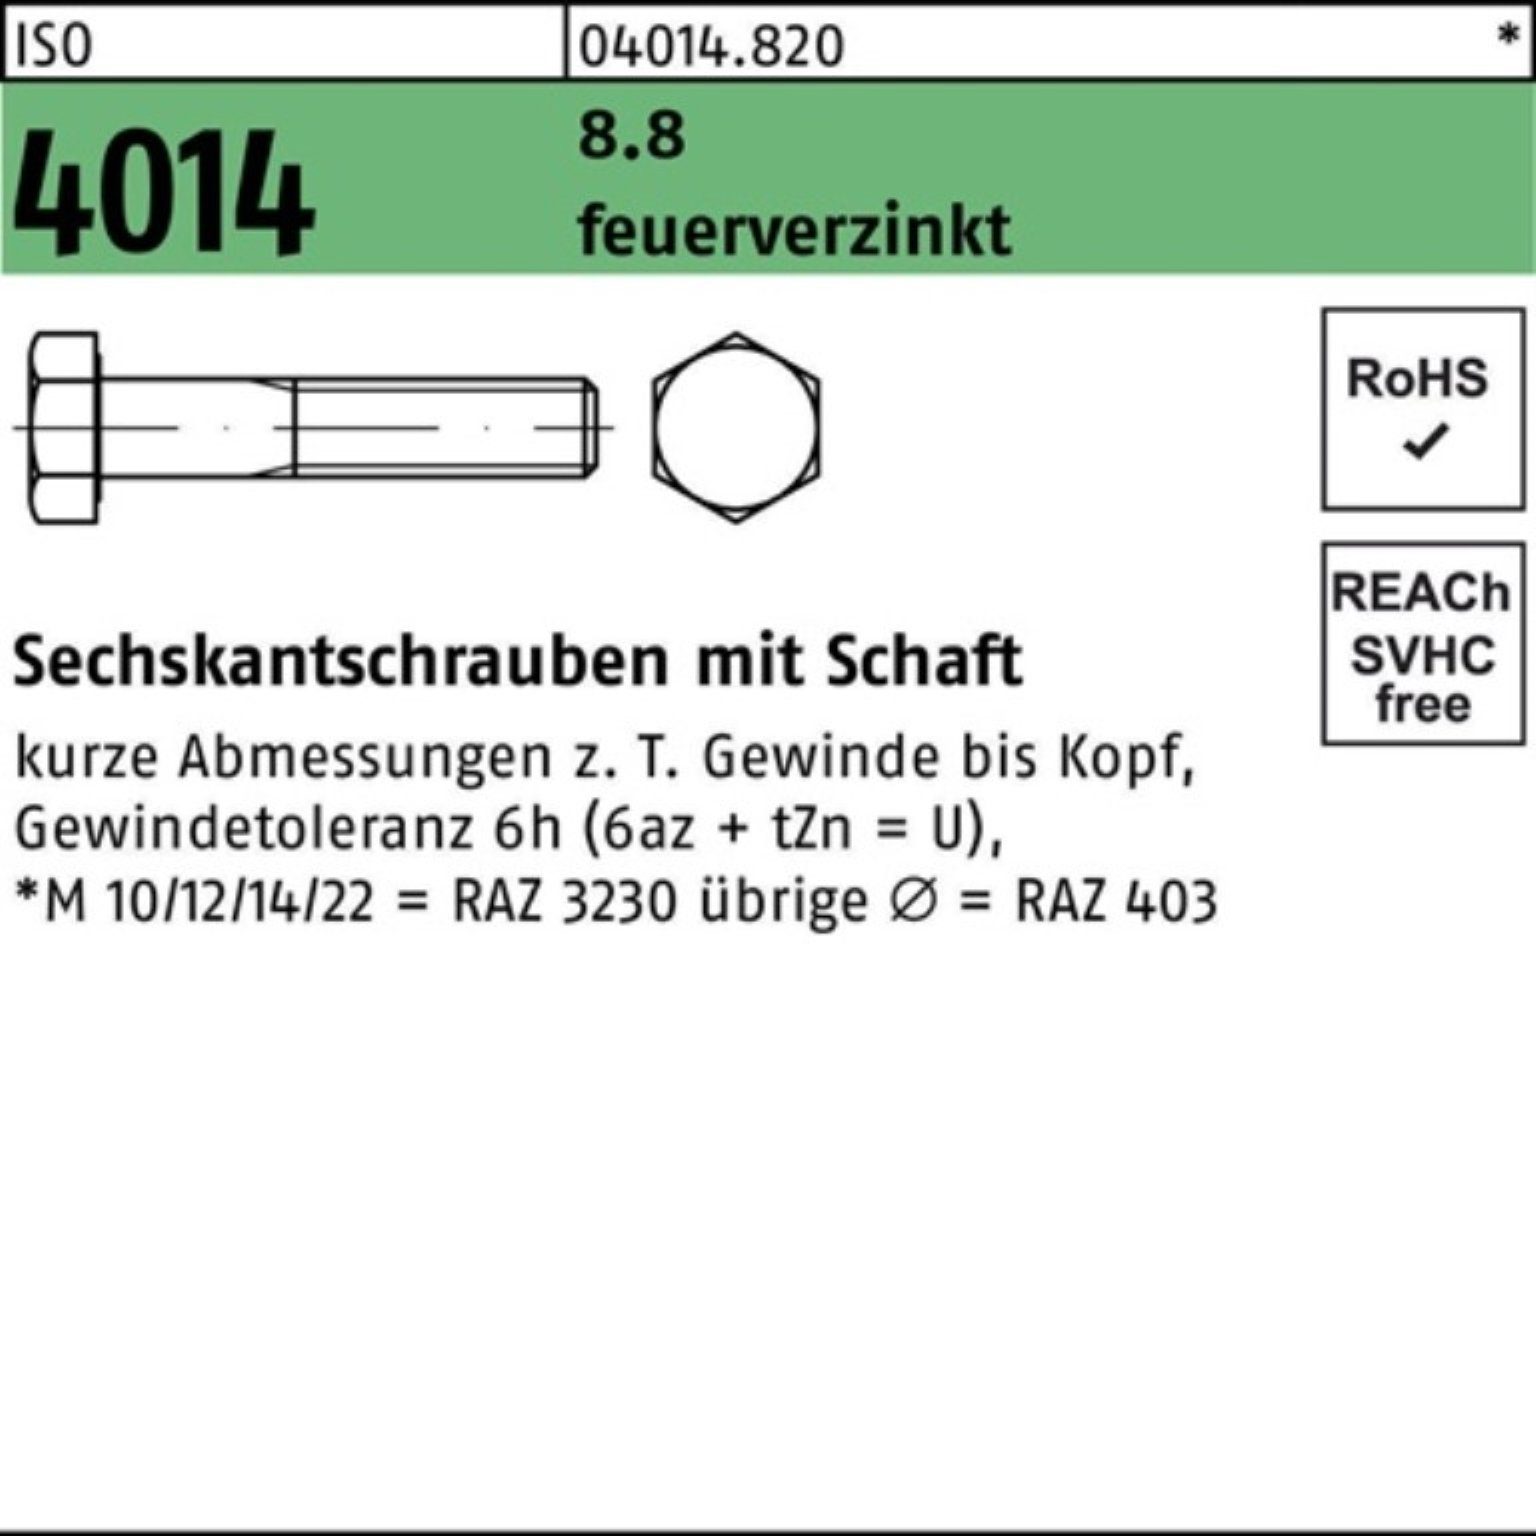 Bufab Sechskantschraube 100er Pack 4014 8.8 Sechskantschraube ISO feuerverz. M16x Schaft 75 25